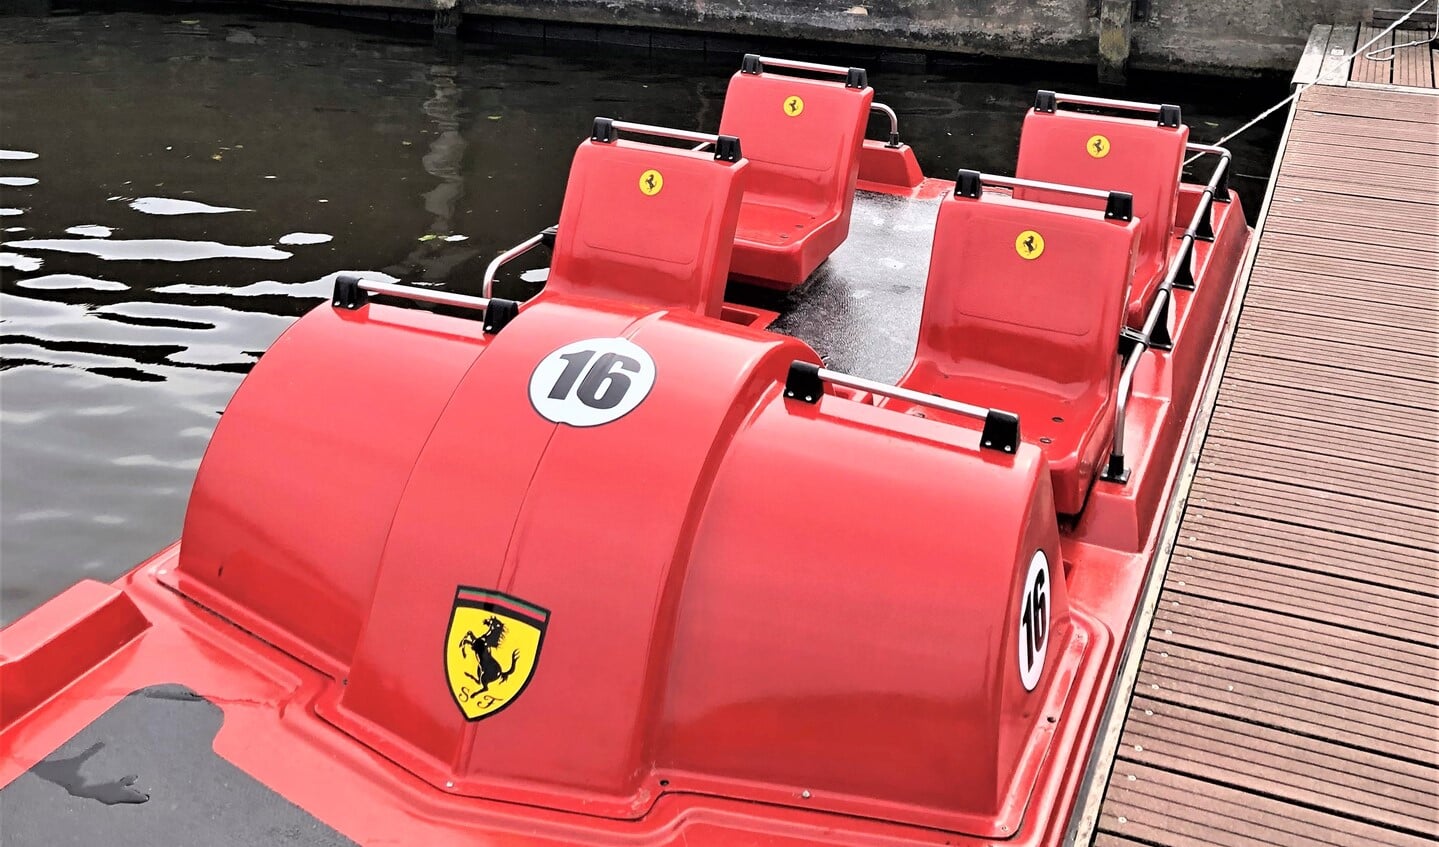 De nieuwe aanwinst van Puurr aan de Vliet; een heuse Ferrari waterfiets (foto: pr).